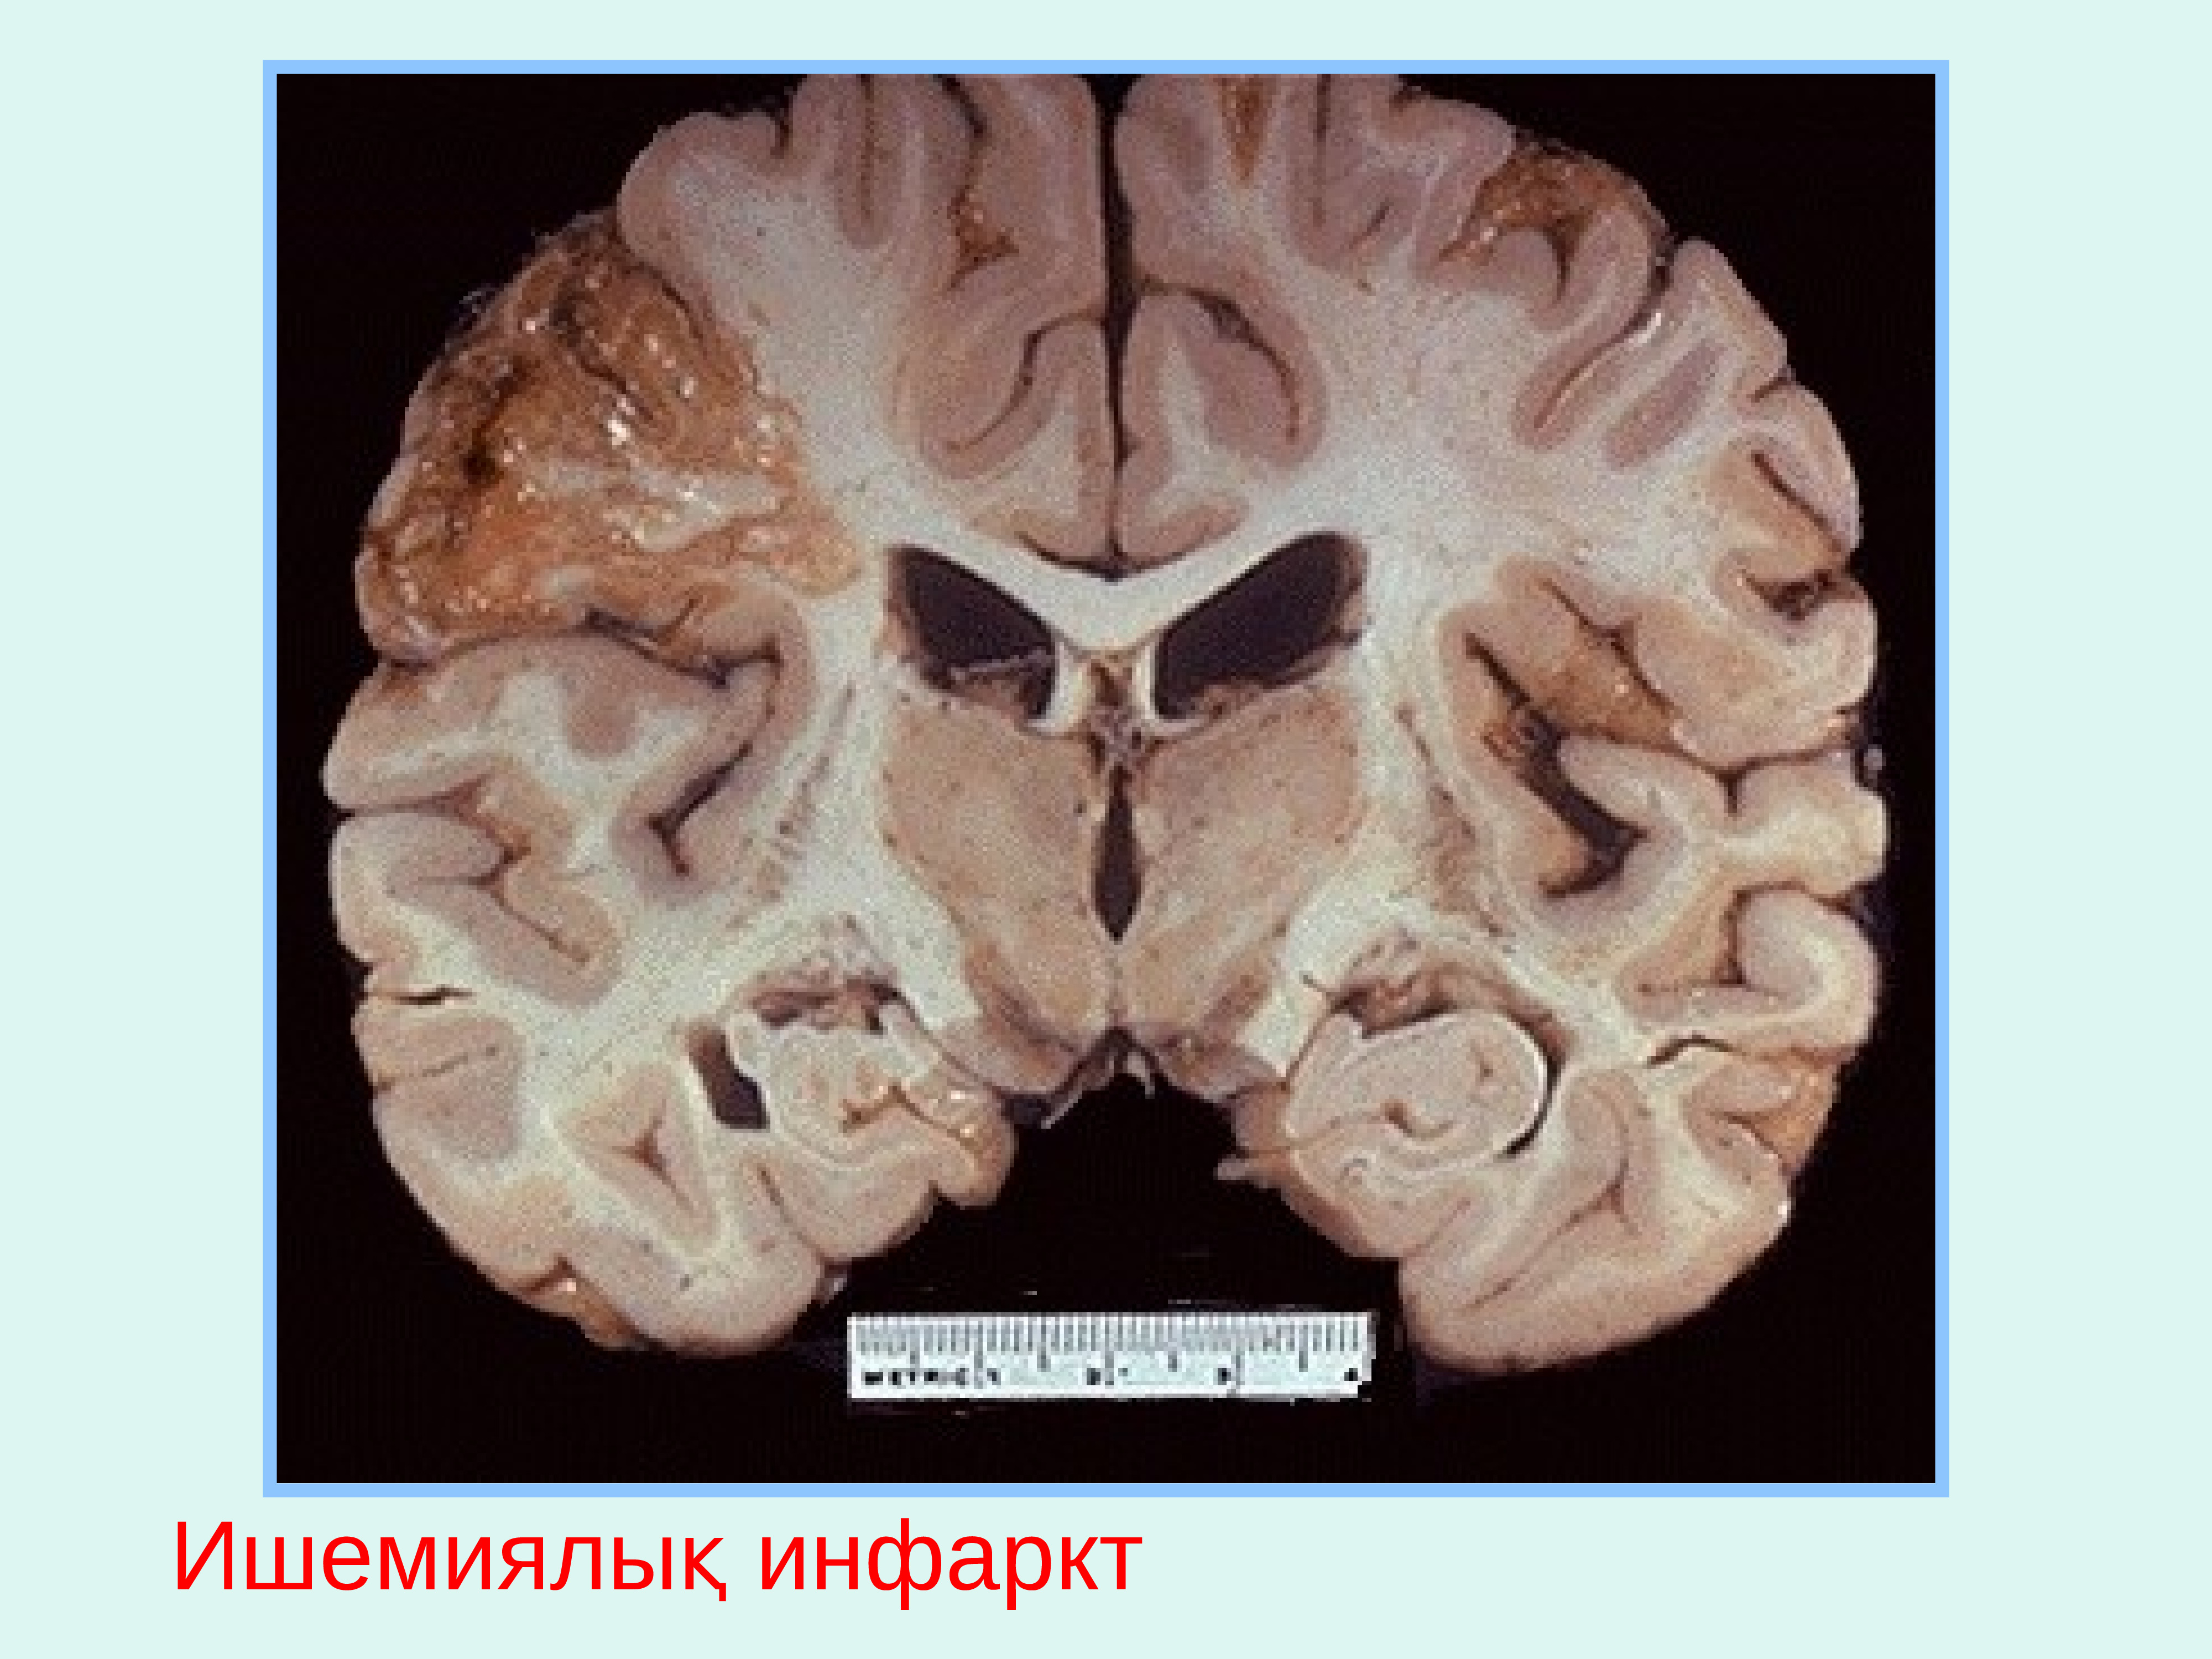 Кровоизлияние ствола мозга. Ишемический инфаркт головного мозга макропрепарат. Колликвационный некроз головного мозга. Болезнь Виллизиева круга. Киста головного мозга макропрепарат.